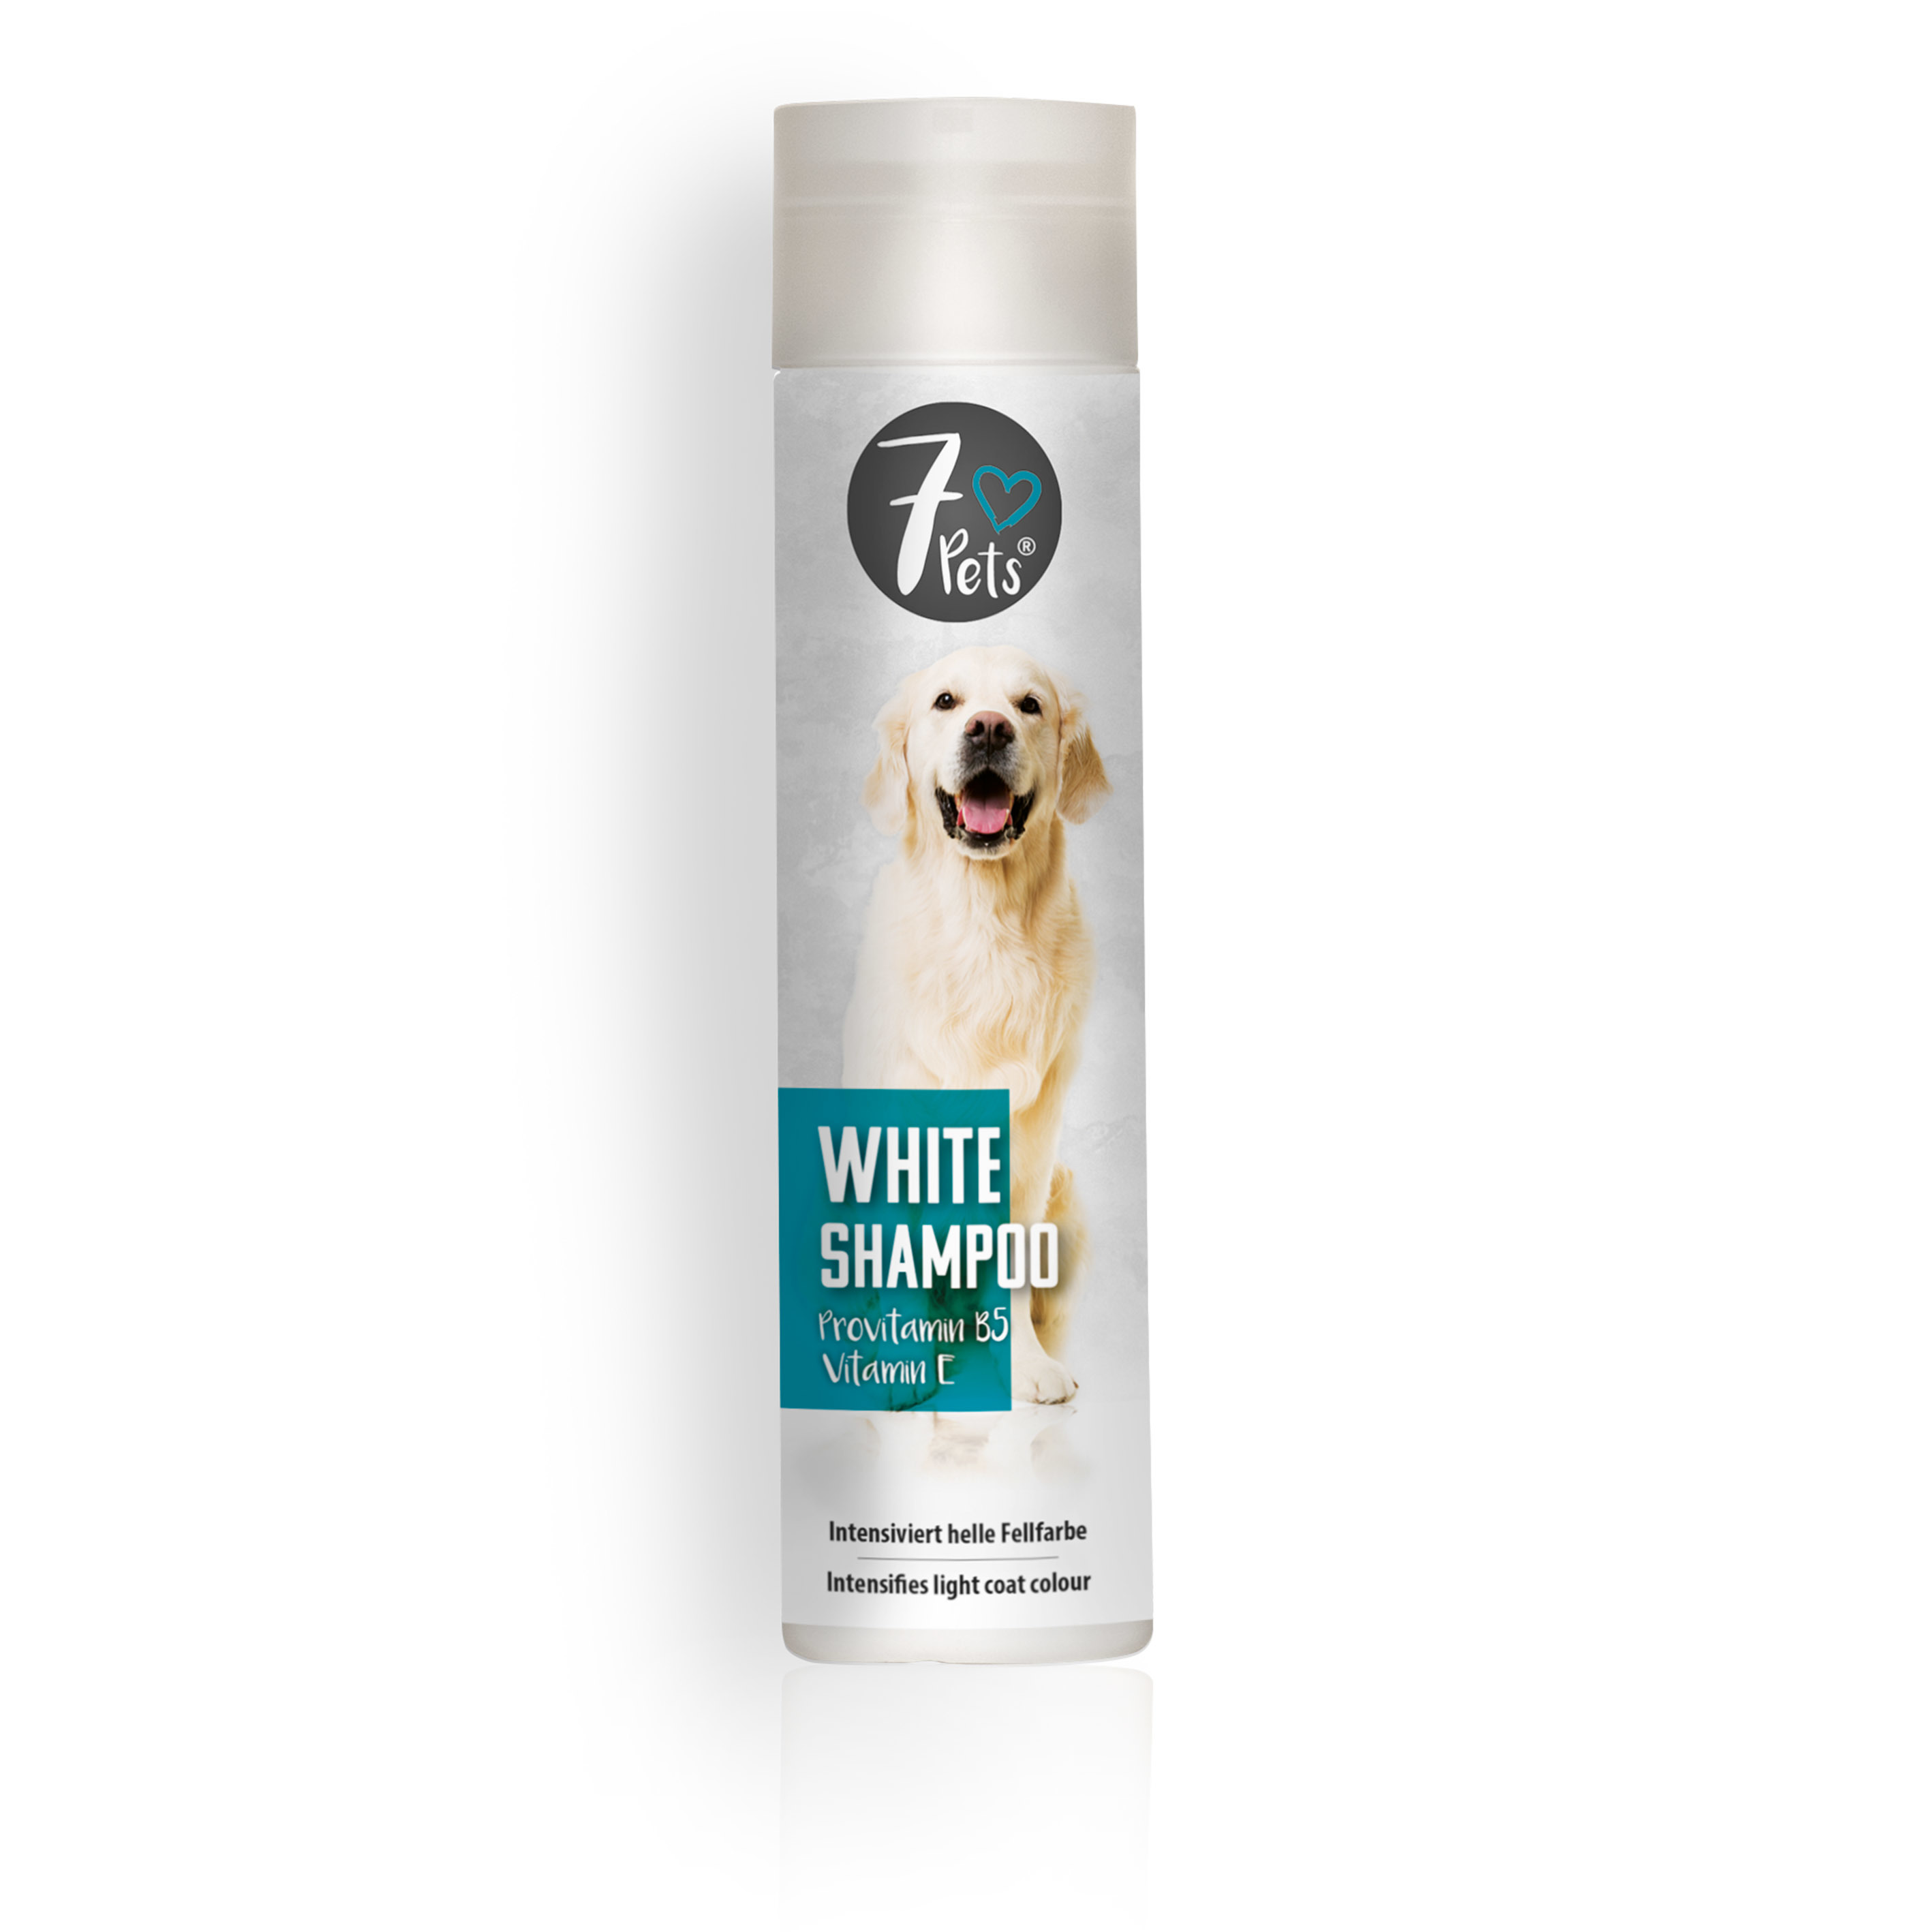 7pets White Shampoo, šampūns gaišiem suņiem, 250 ml